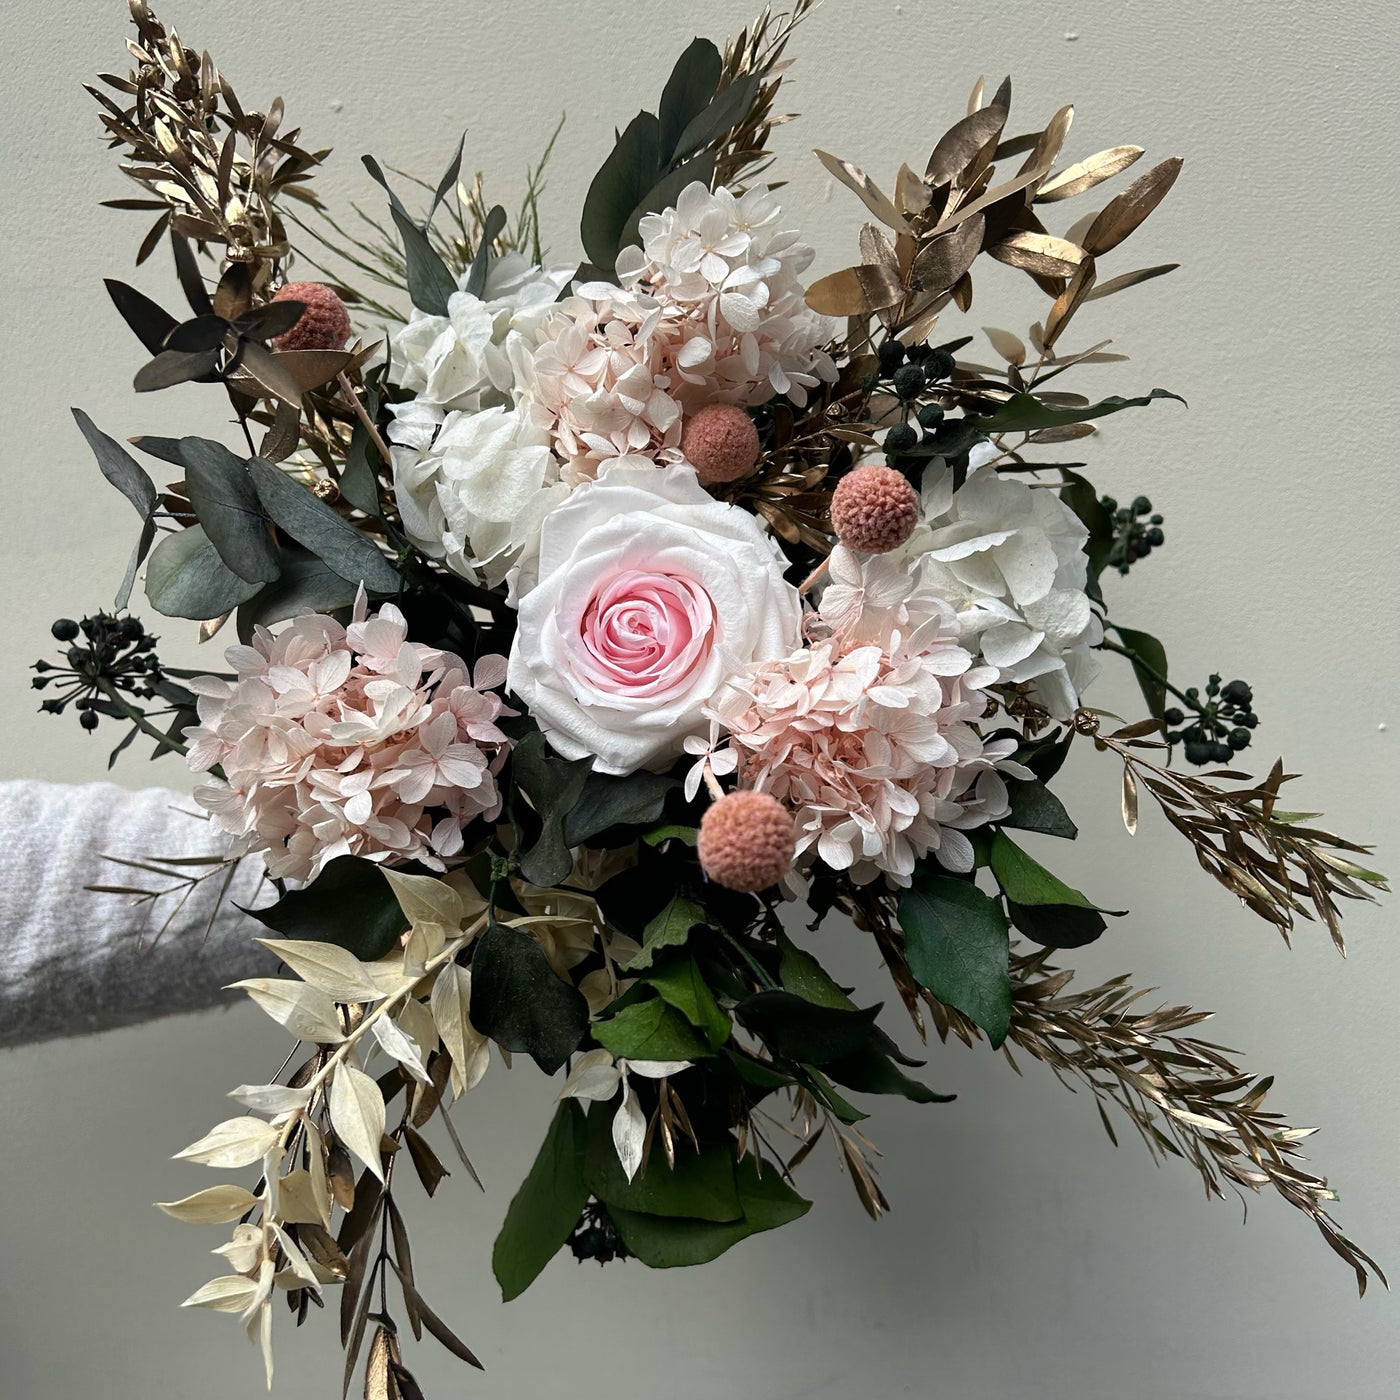 Bouquet de fleurs stabilisées pour décorer votre table de Noël | Ateliers Ouchamp